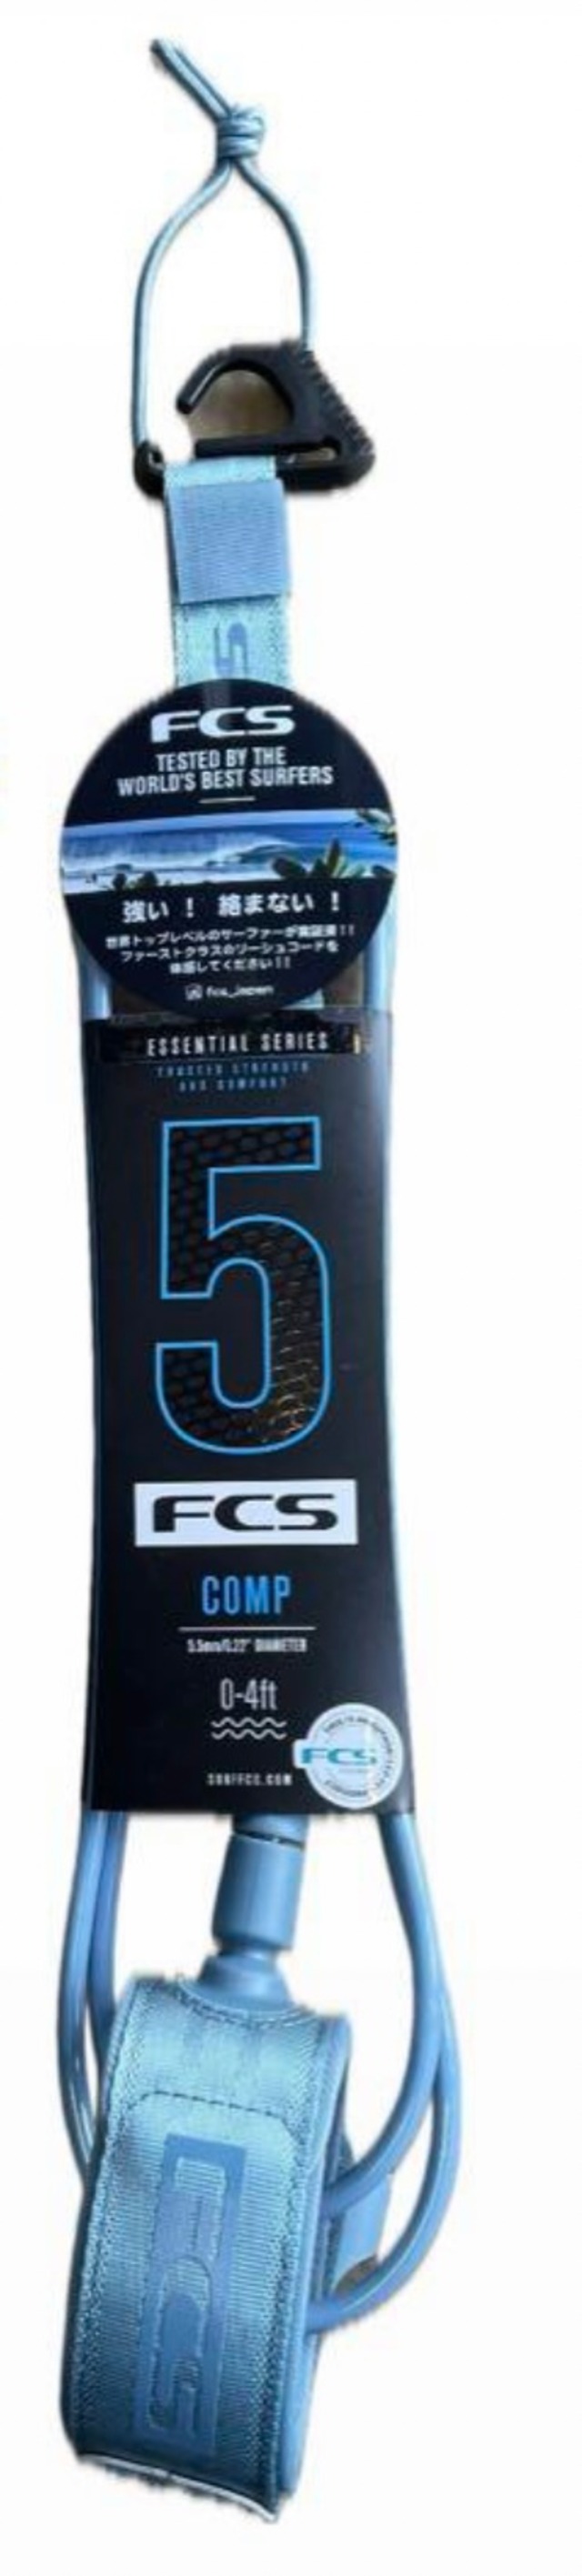 FCS6ALLROUND ESSENTIALリーシュTranquil Blue